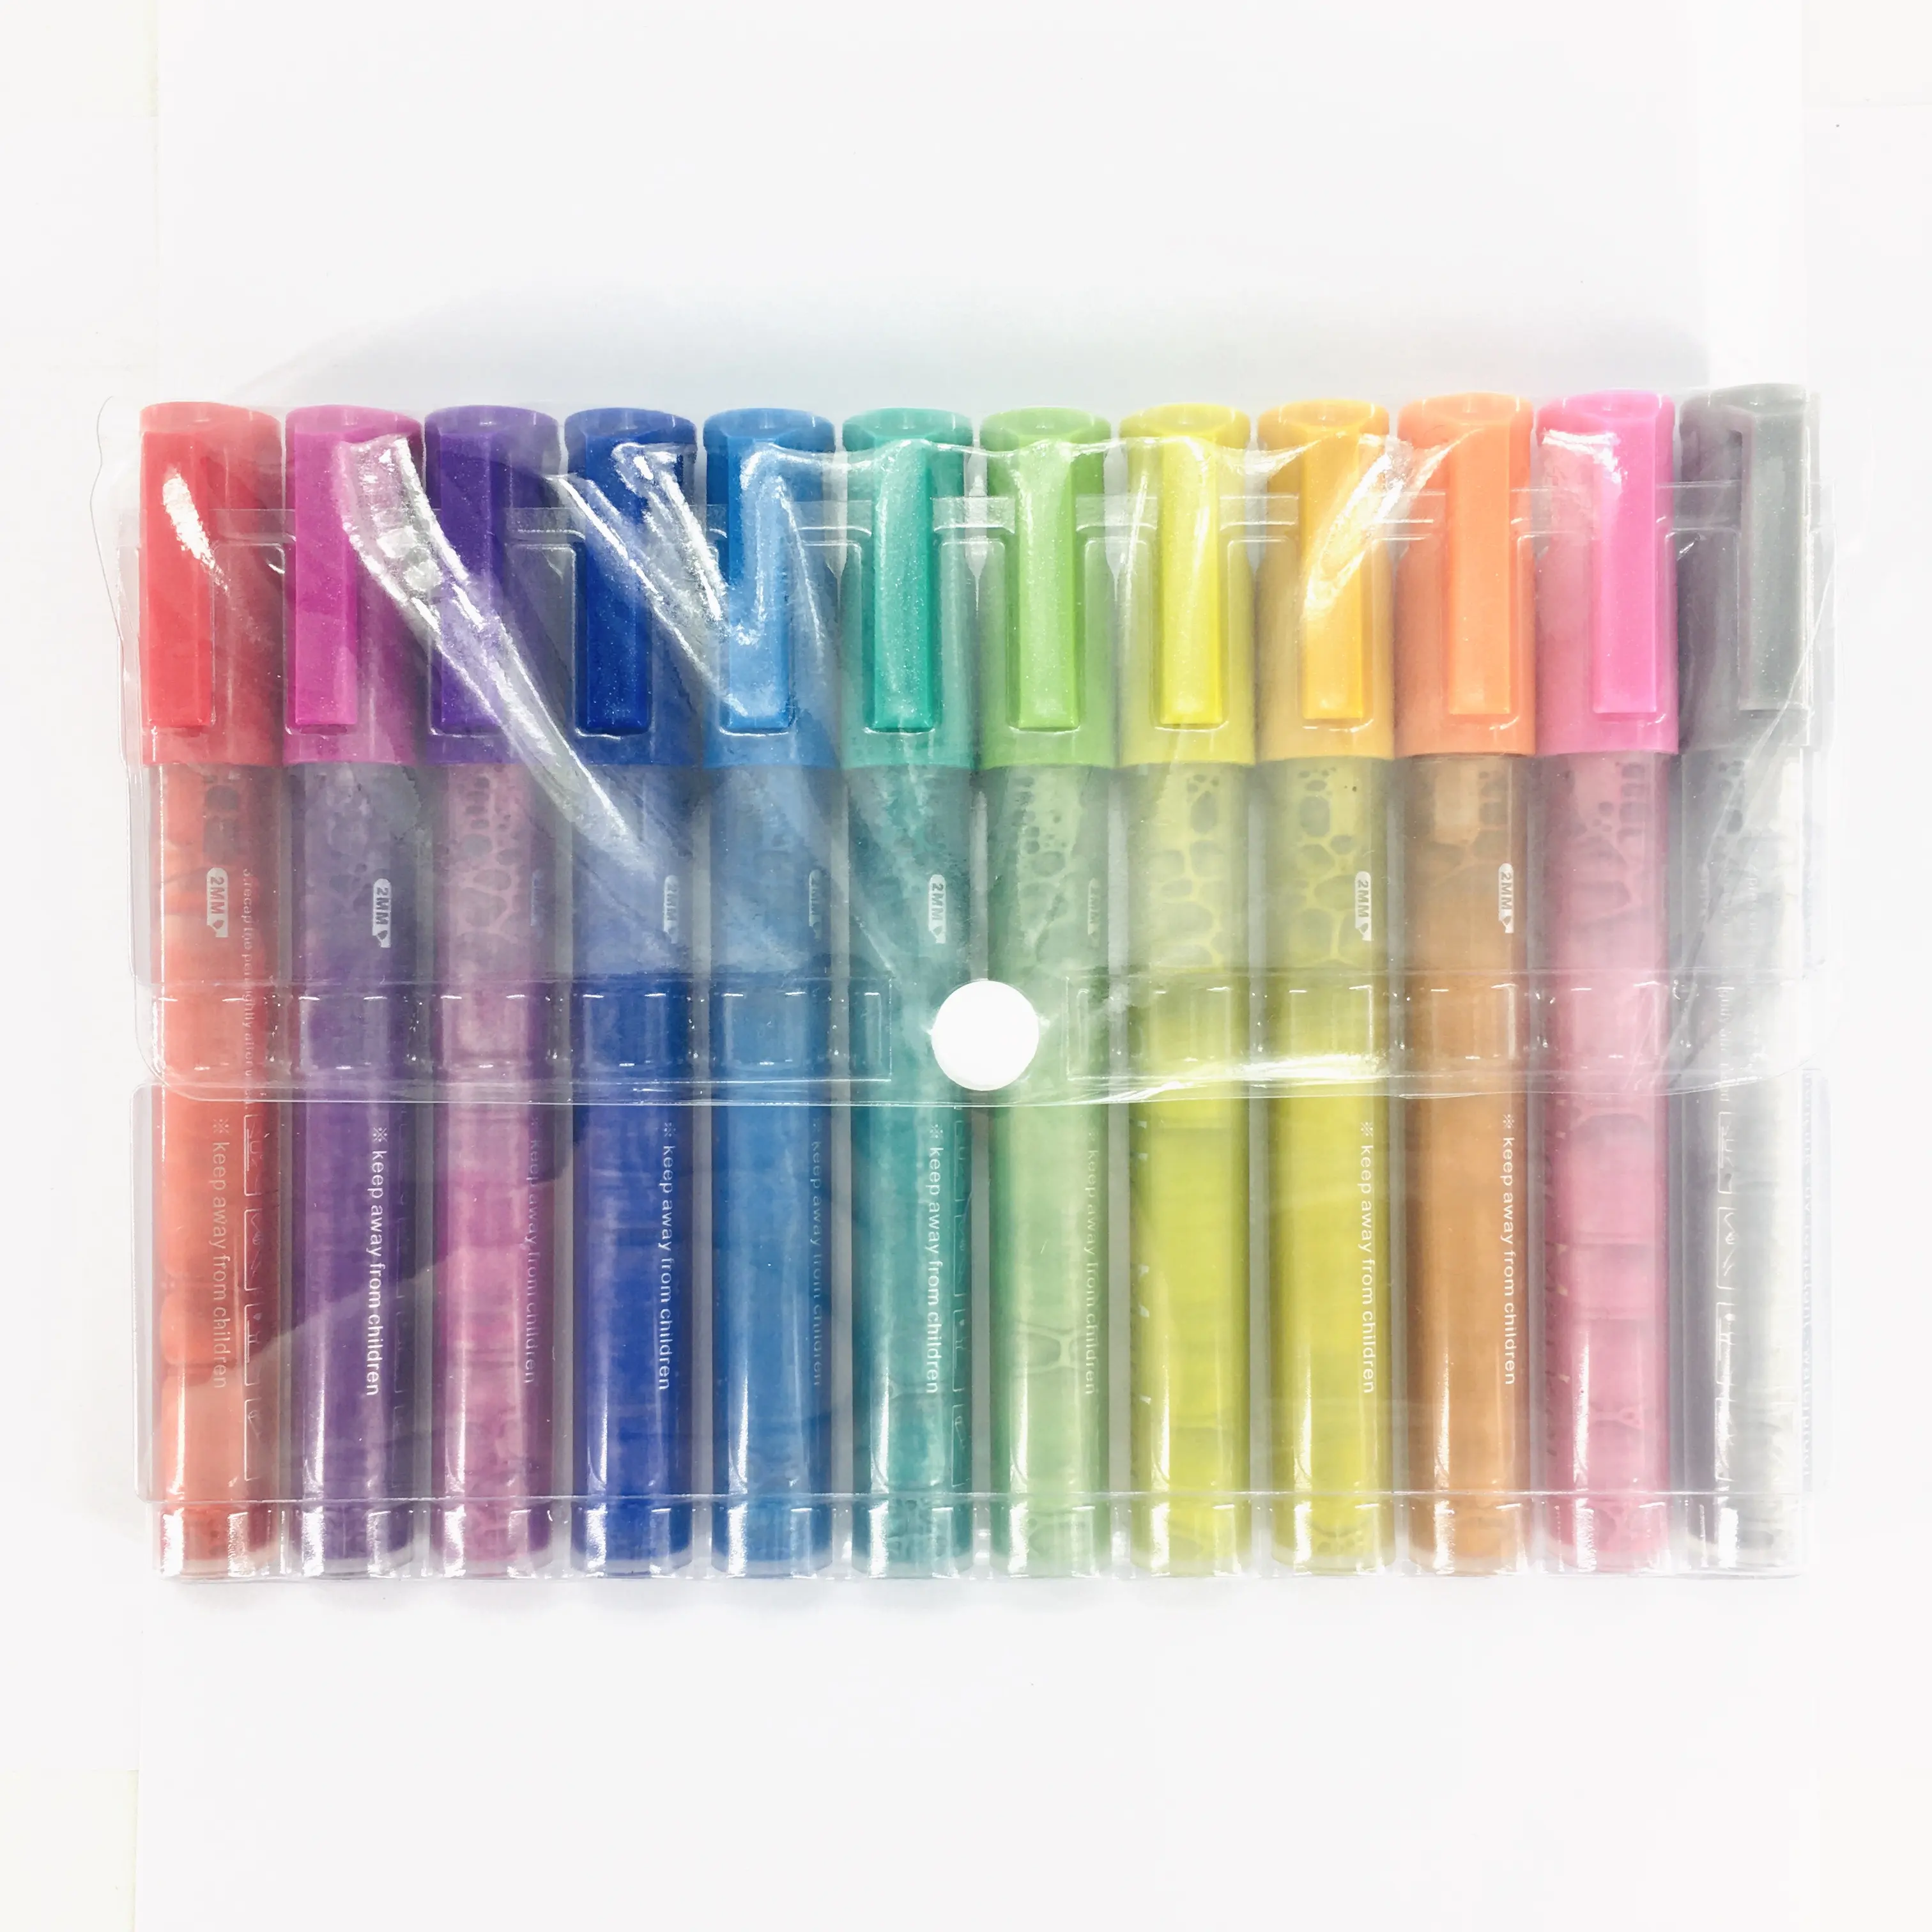 28 لونًا من أقلام الأكريليك مع طرف متوسط قابل للعكس